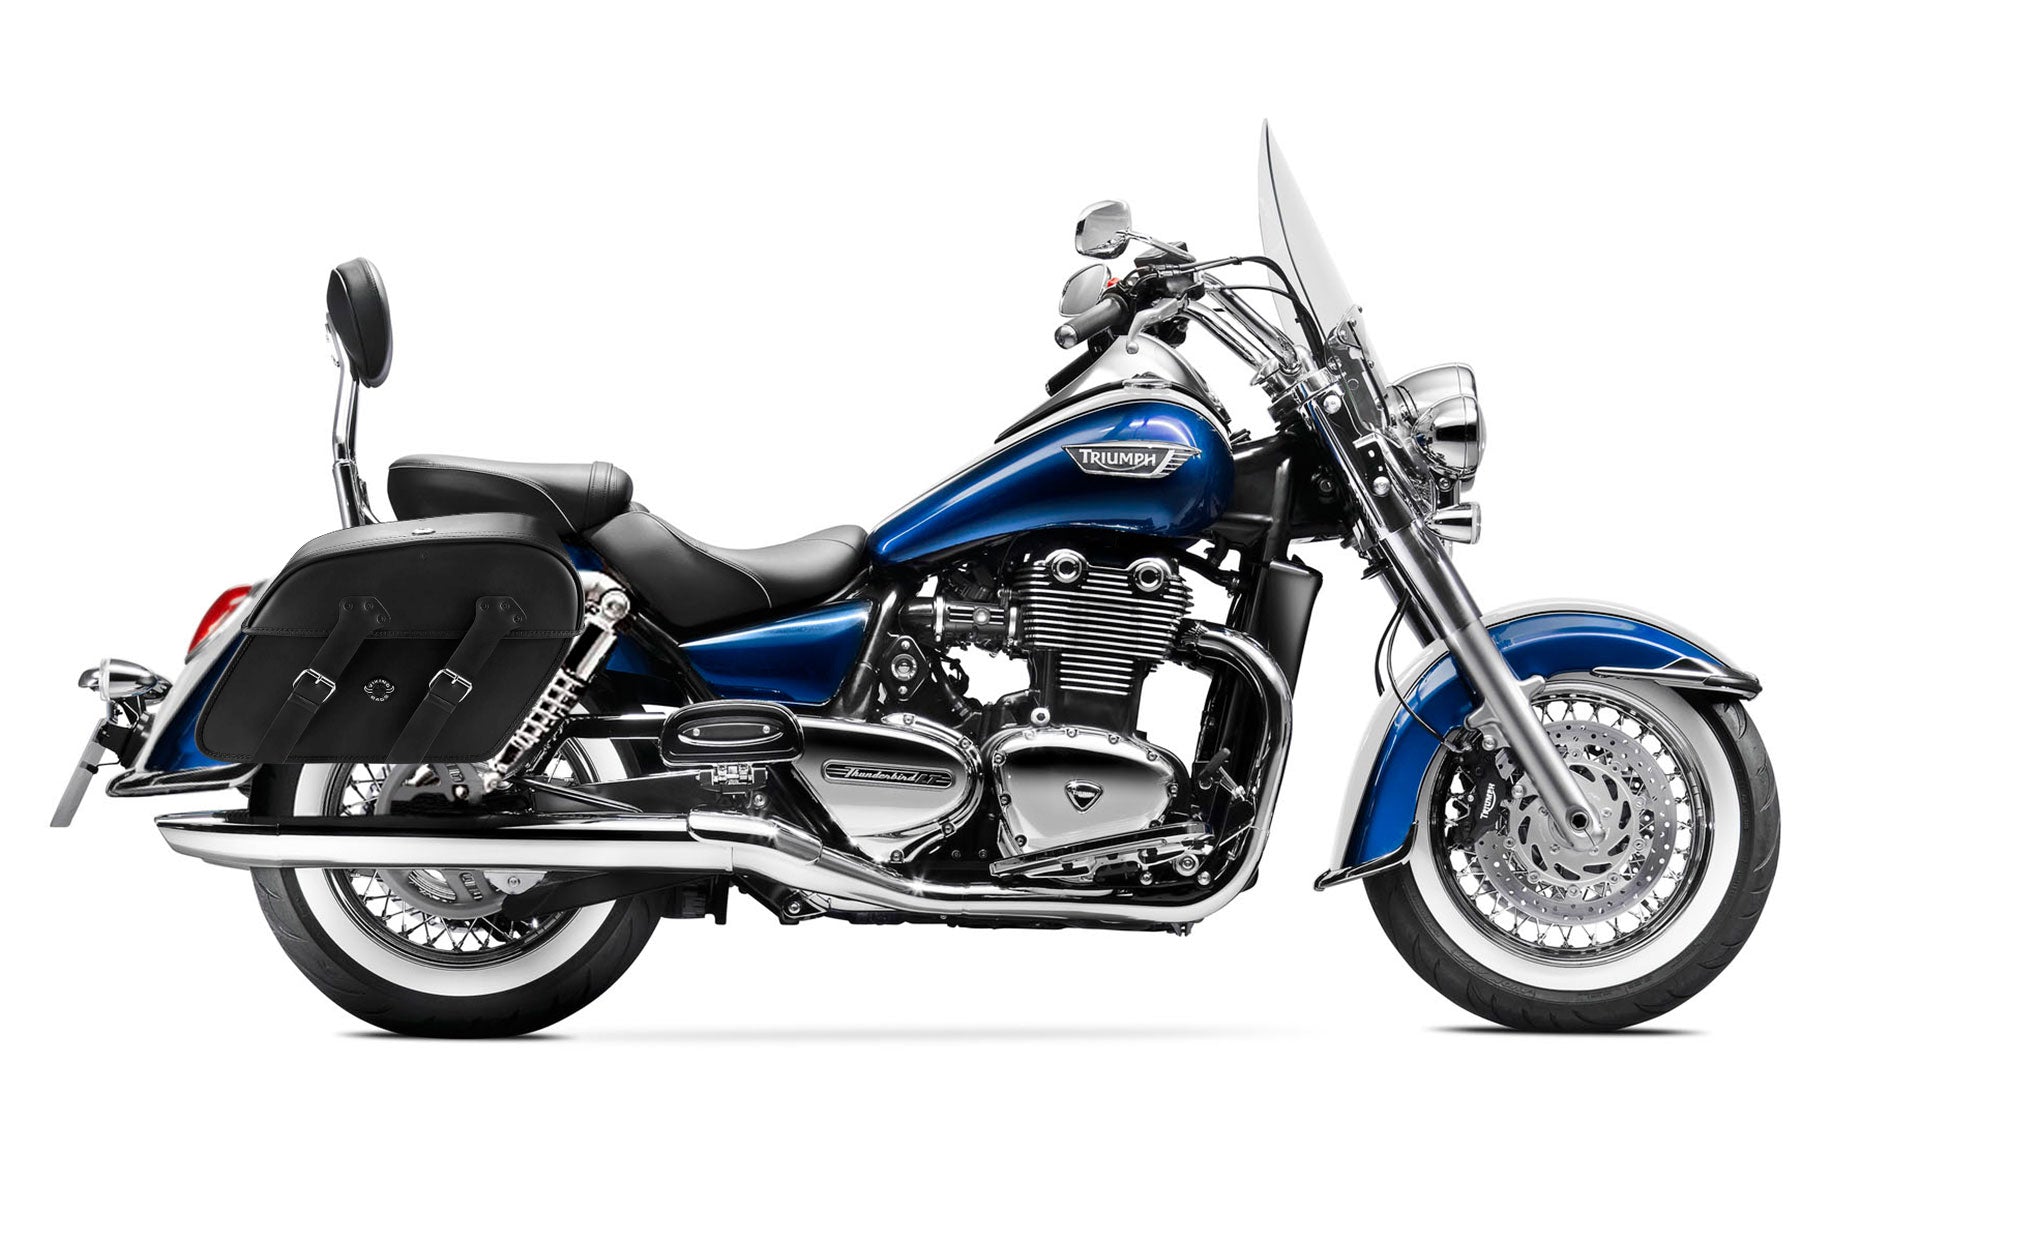 Viking Raven Extra Large Triumph Thunderbird Lt Leather Motorcycle Saddlebags on Bike Photo @expand